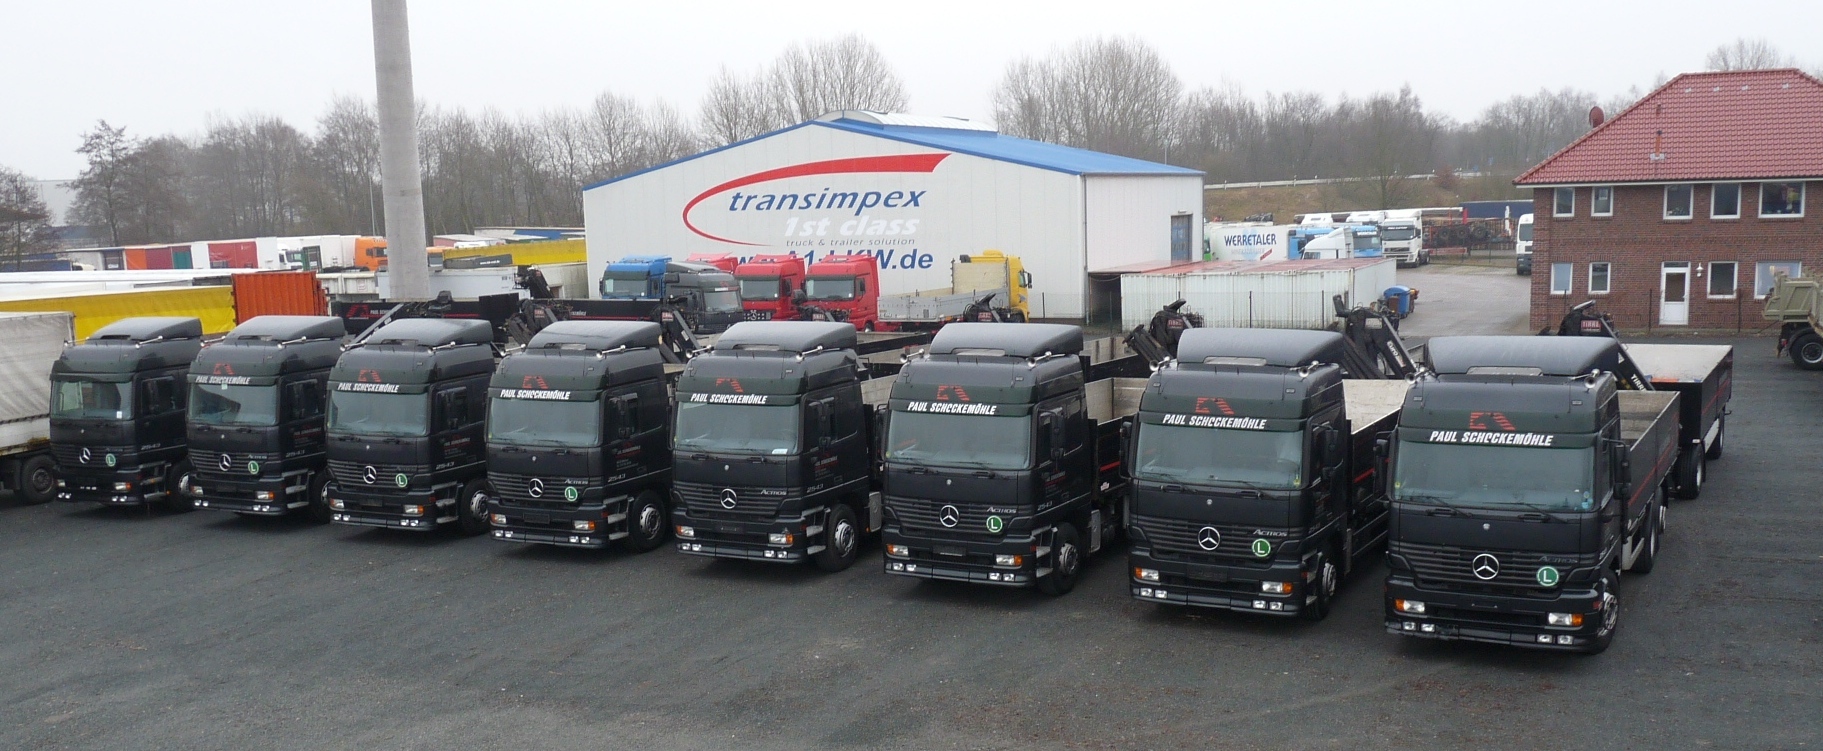 A1-Truck GmbH undefined: hình 2